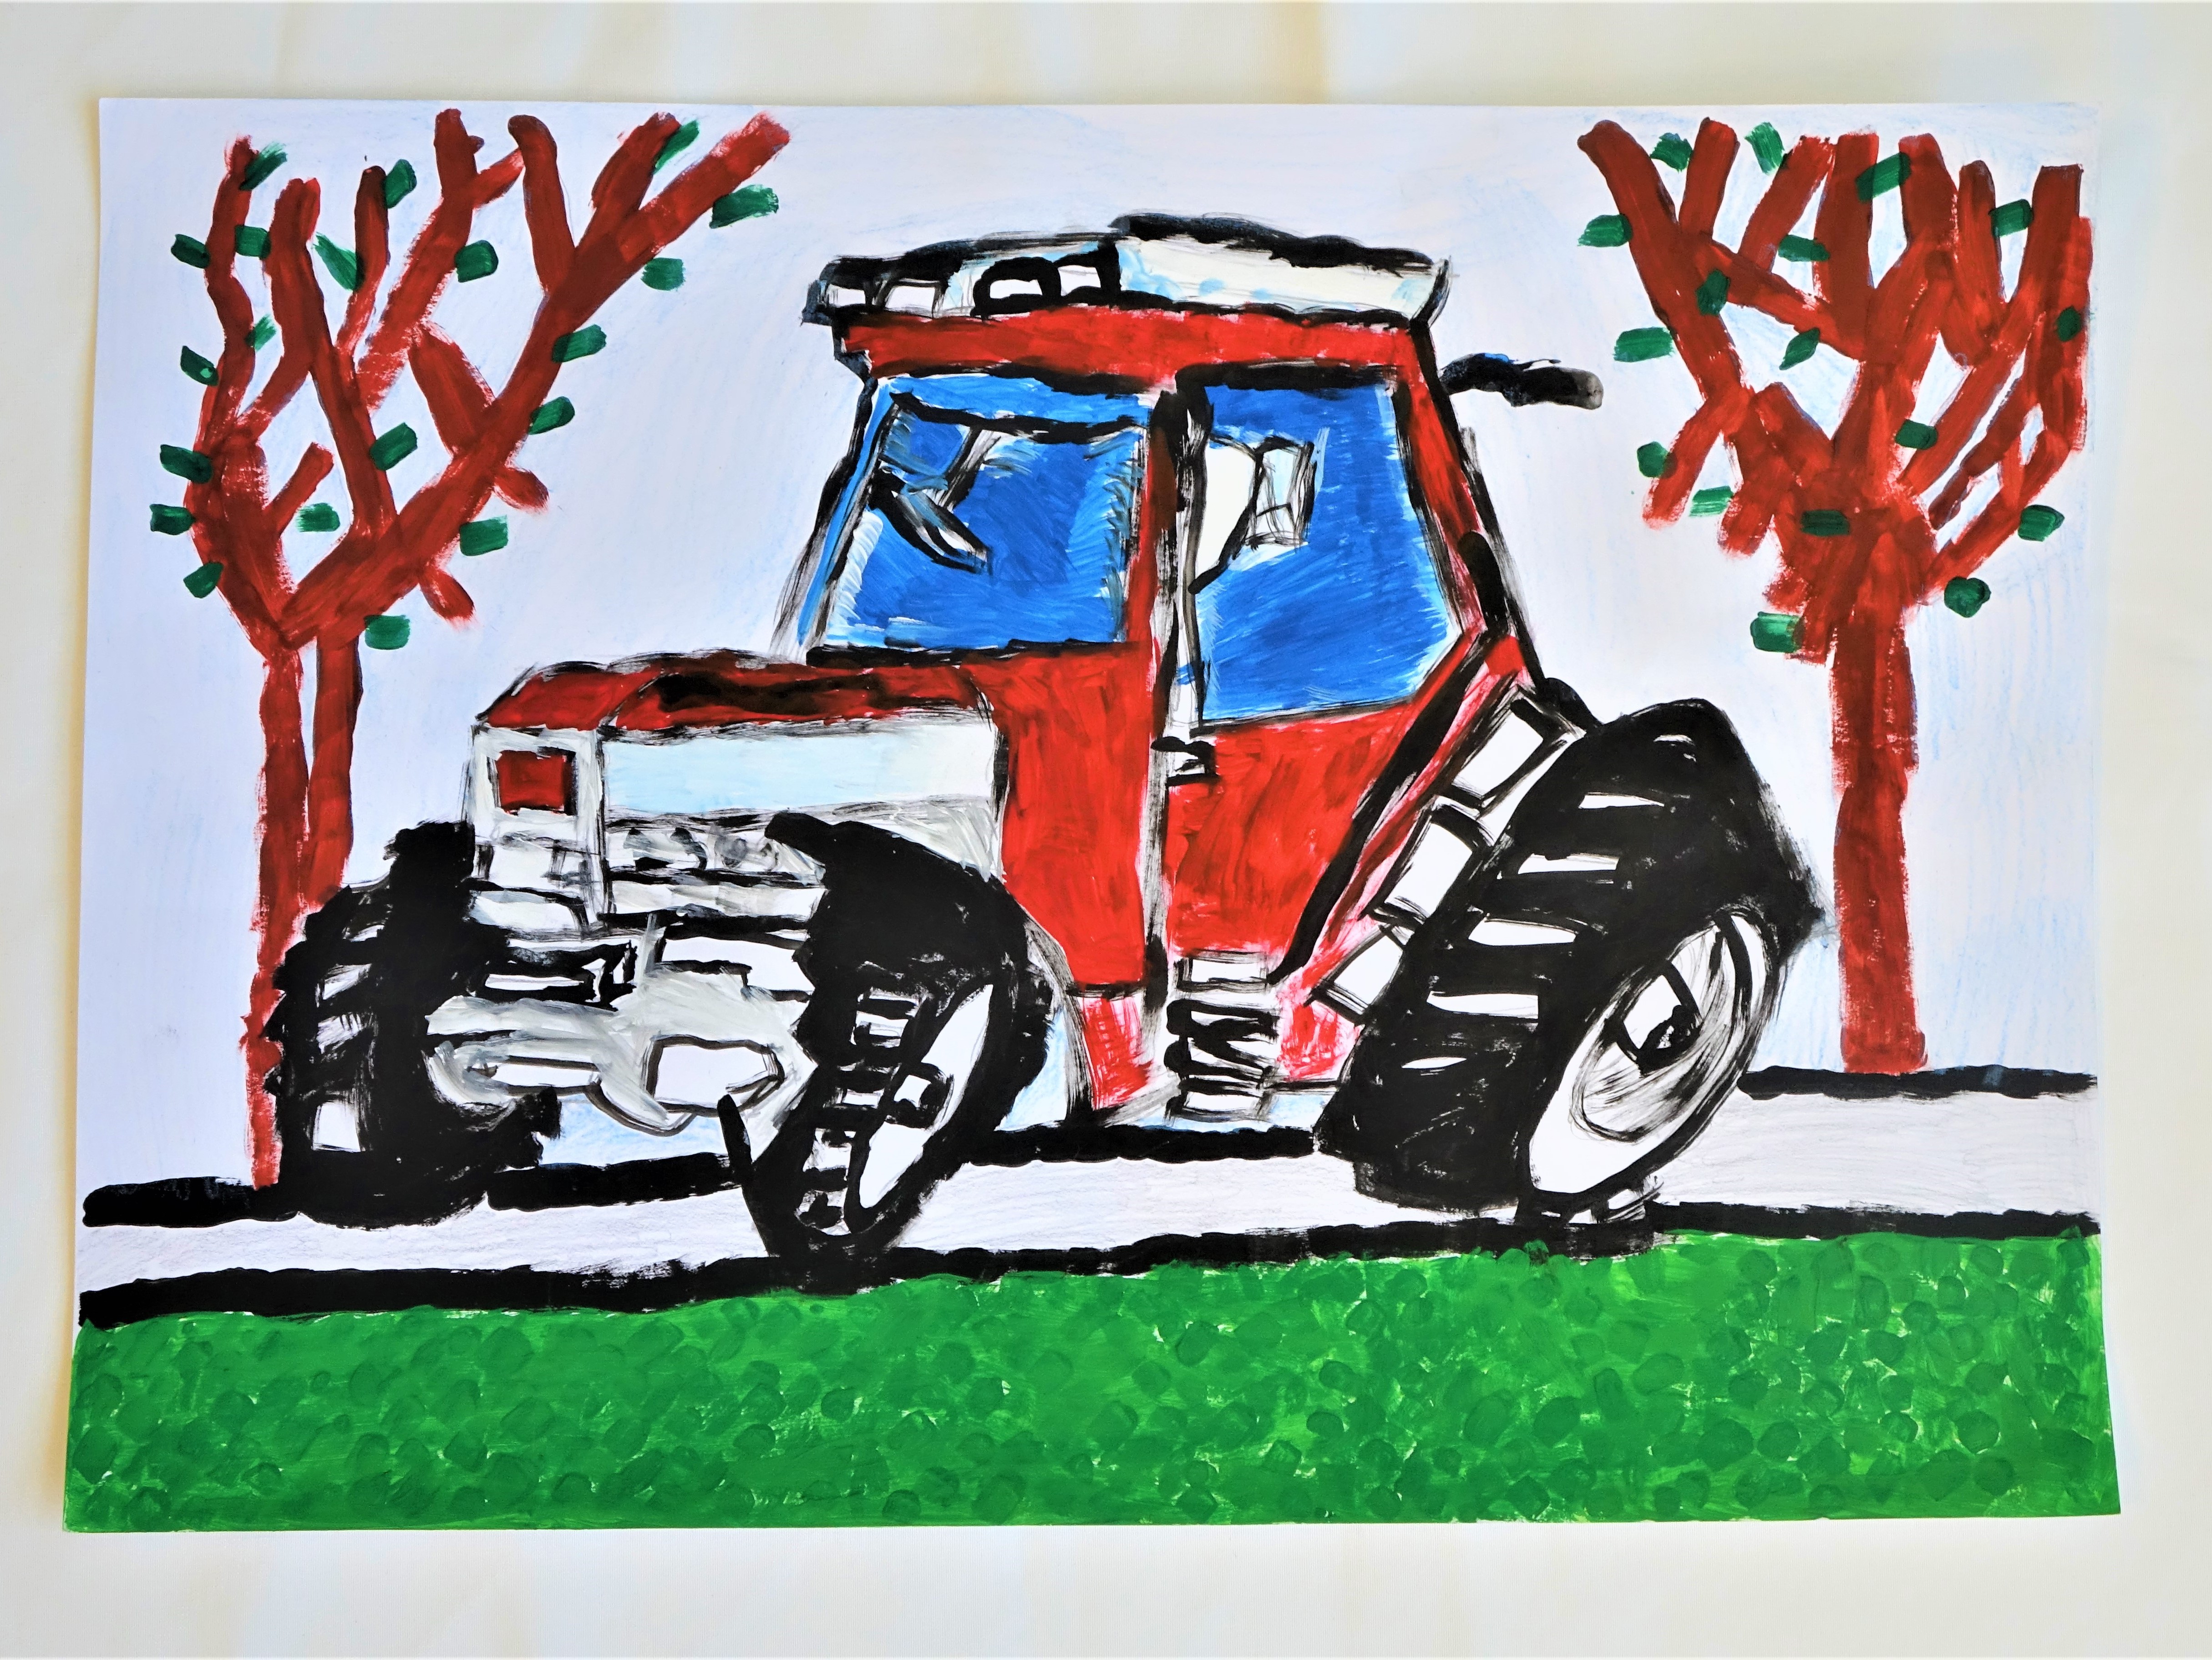 A pályázó a kedvenc traktorját rajzolta le, A4 méretben, vízfestékkel készült. A két oldalon két fa látható barna színben, középen egy traktor rajza kék és piros színekben,  fekete kerekekkel. Fehérrel rajzolt úton halad, a kép legalsó részében füves rész látható.